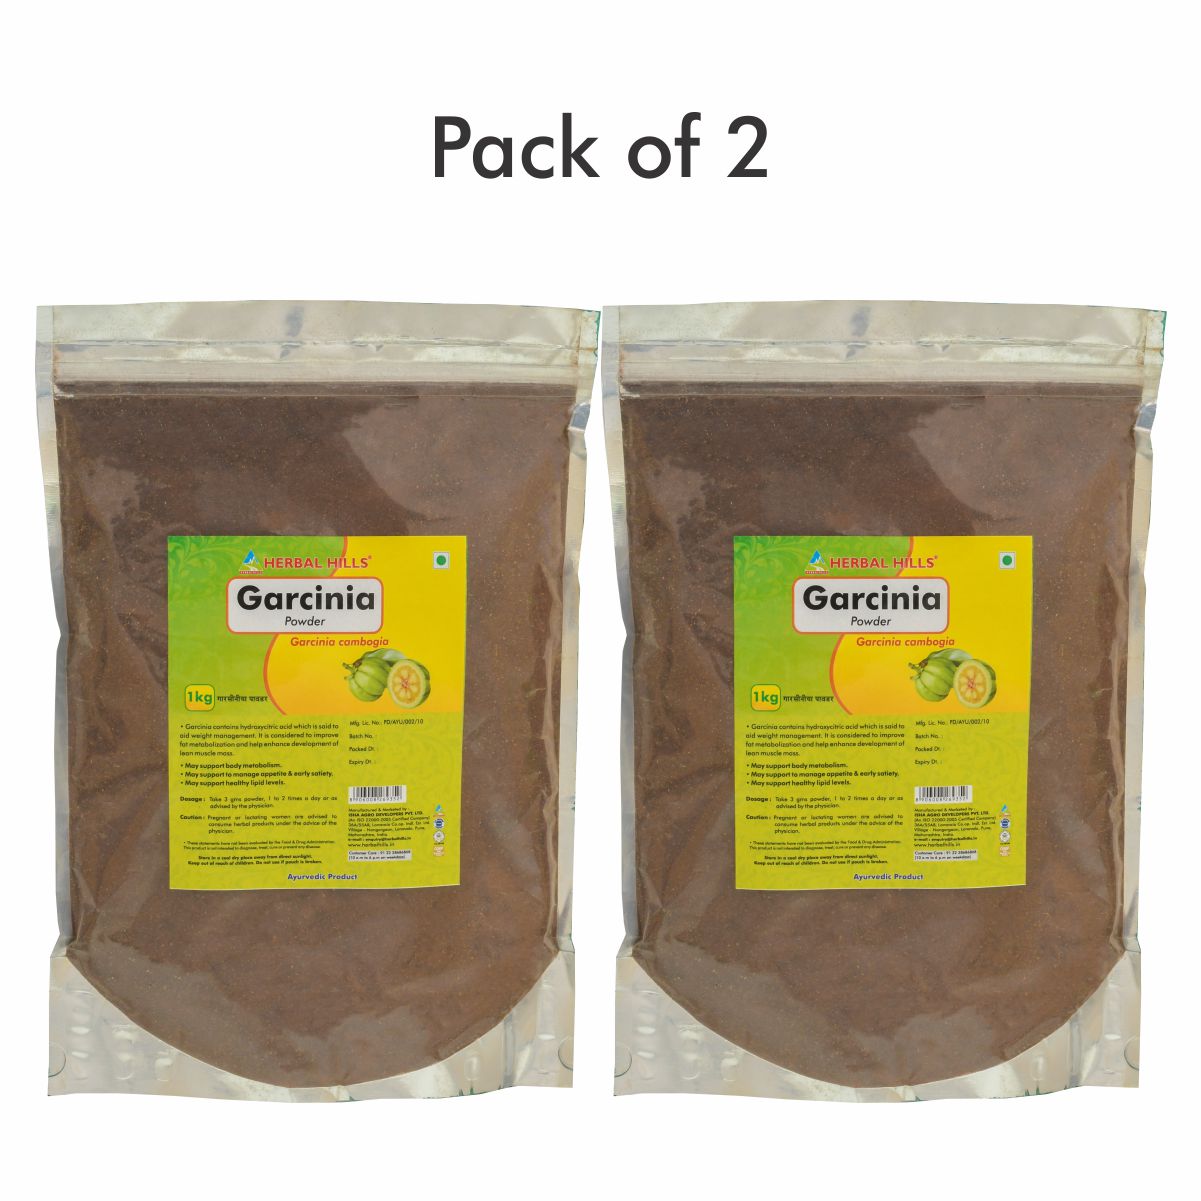 Buy Herbal Hills Garcinia Powder at Best Price Online